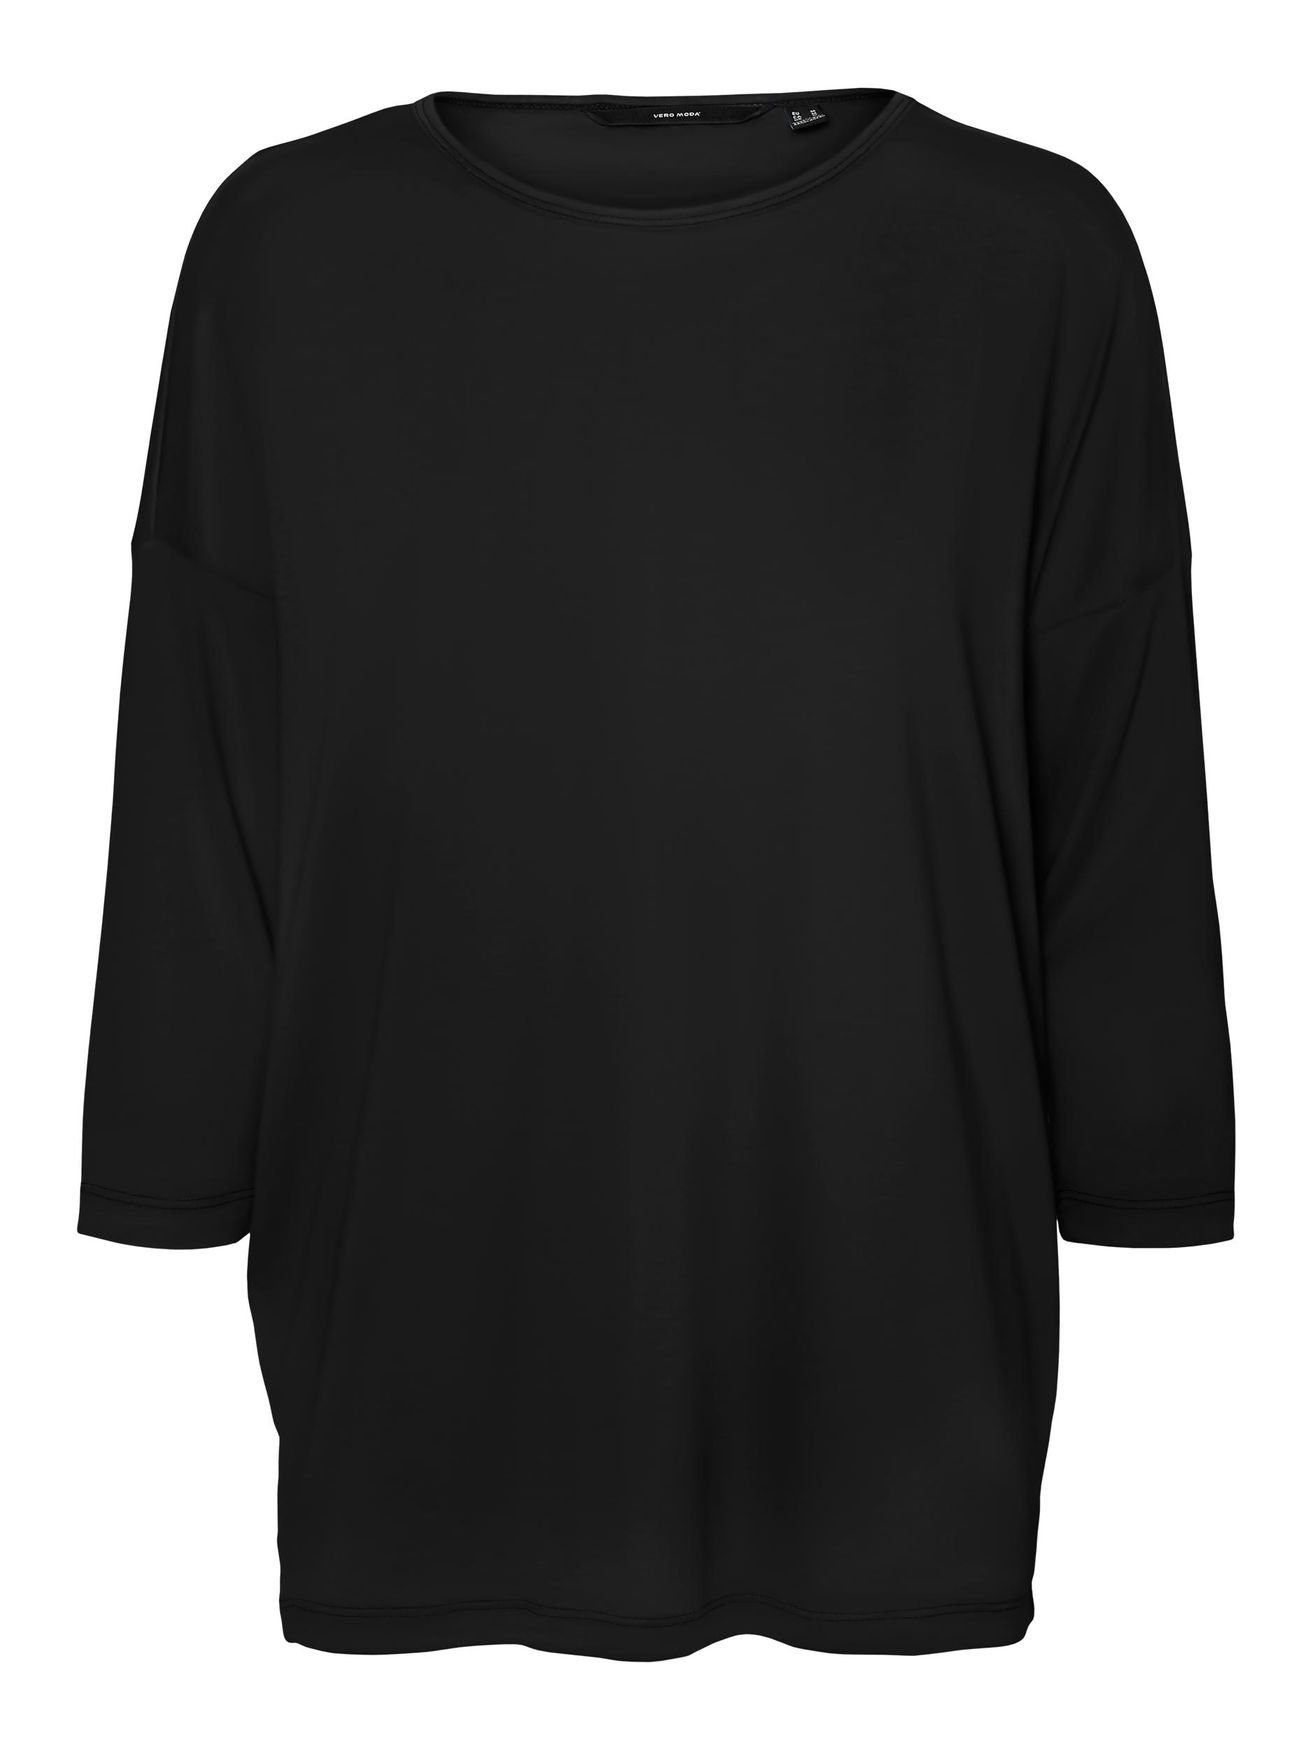 Vero Moda T-Shirt Einfarbiges 3/4 Arm Shirt Rundhals Langarm Top Oberteil  VMCARLA 4856 in Schwarz, Überschnittene Schulter | T-Shirts